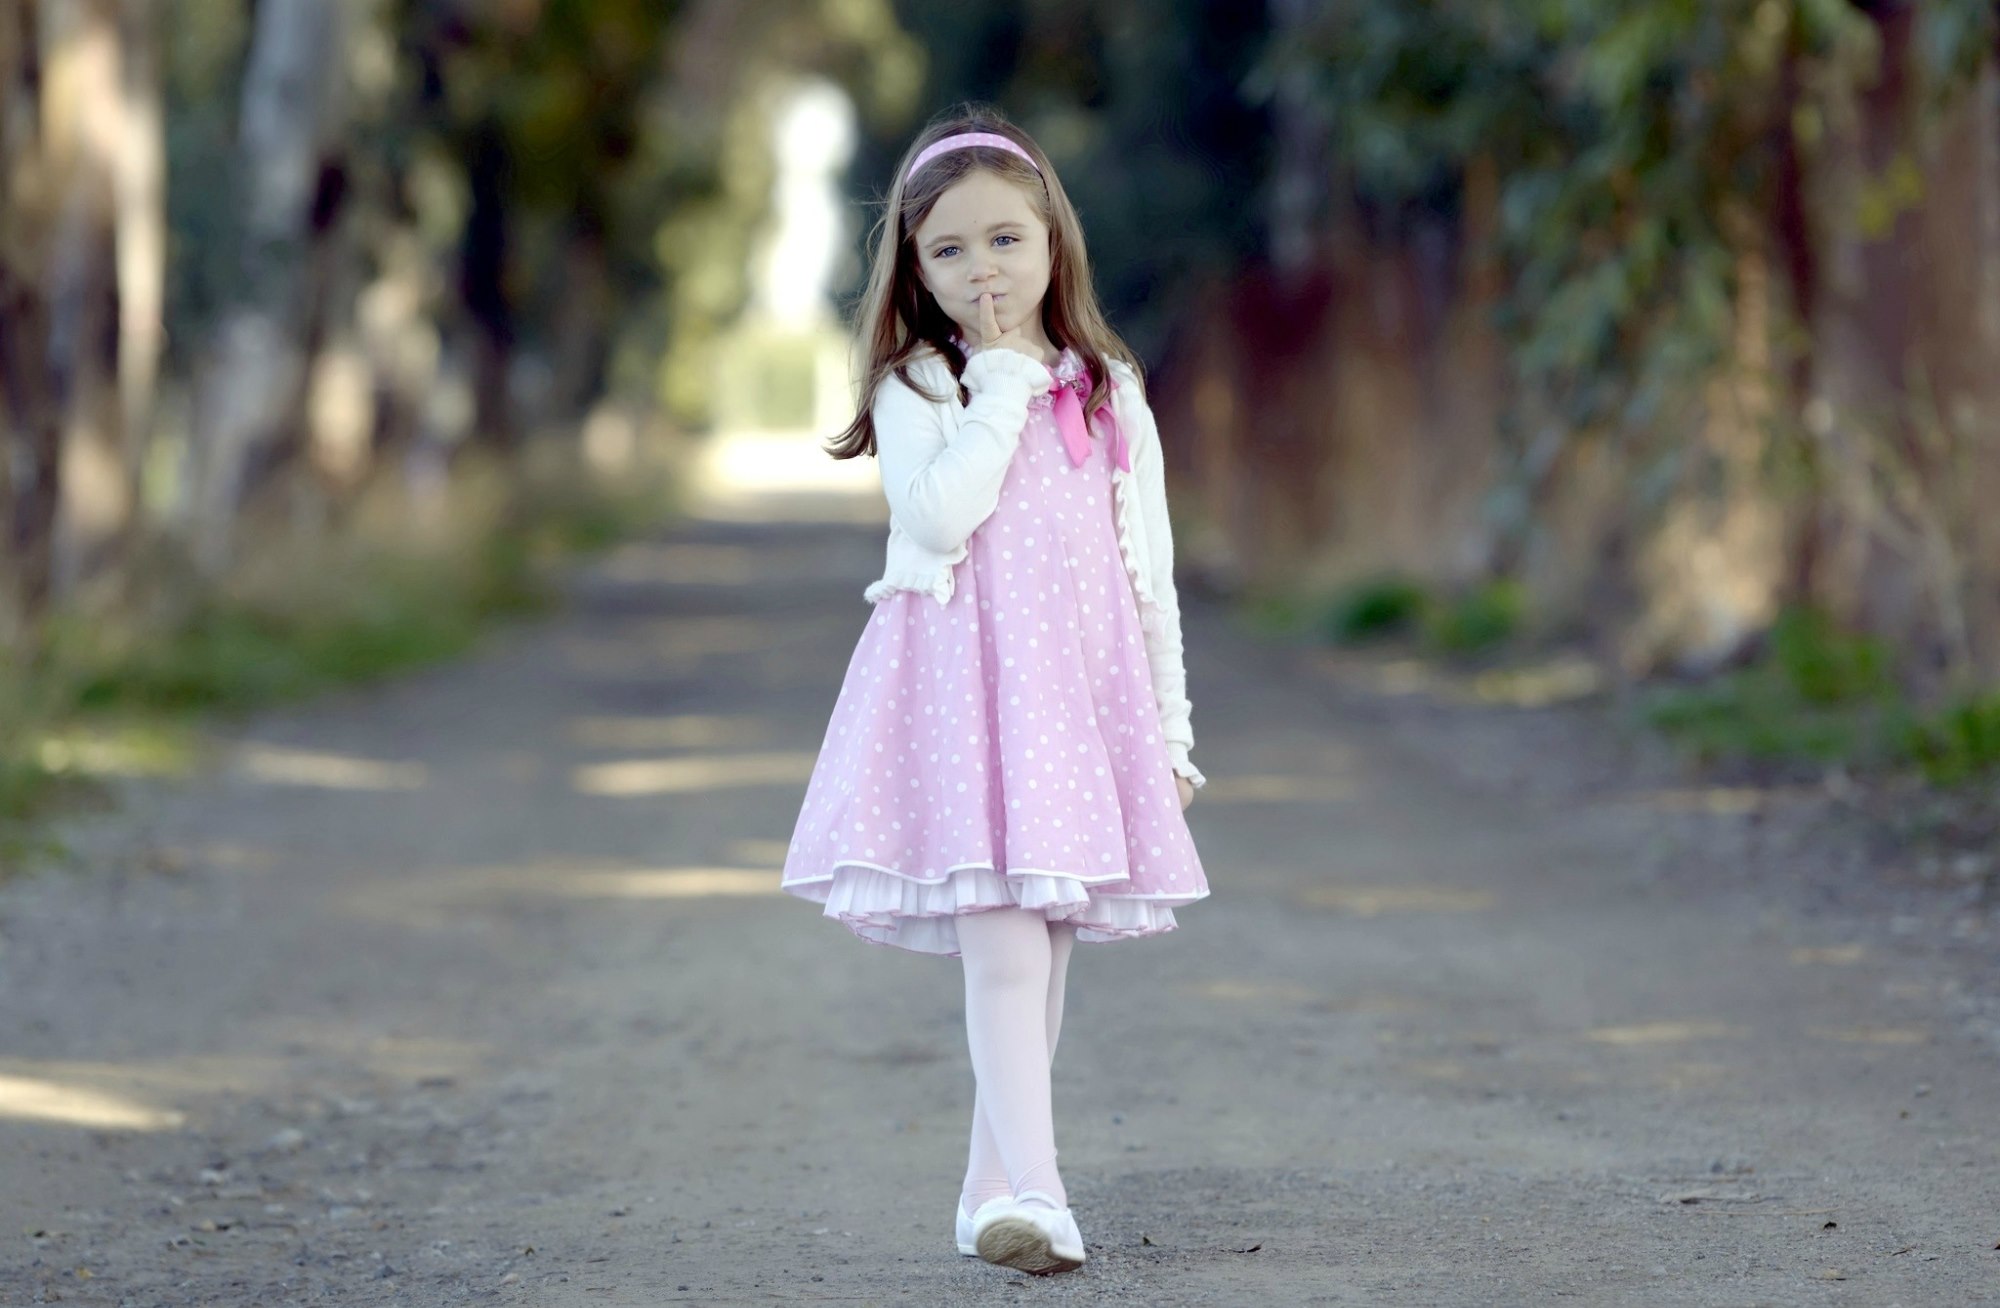 Image: Girl, pink dress, headband, walk, walkway